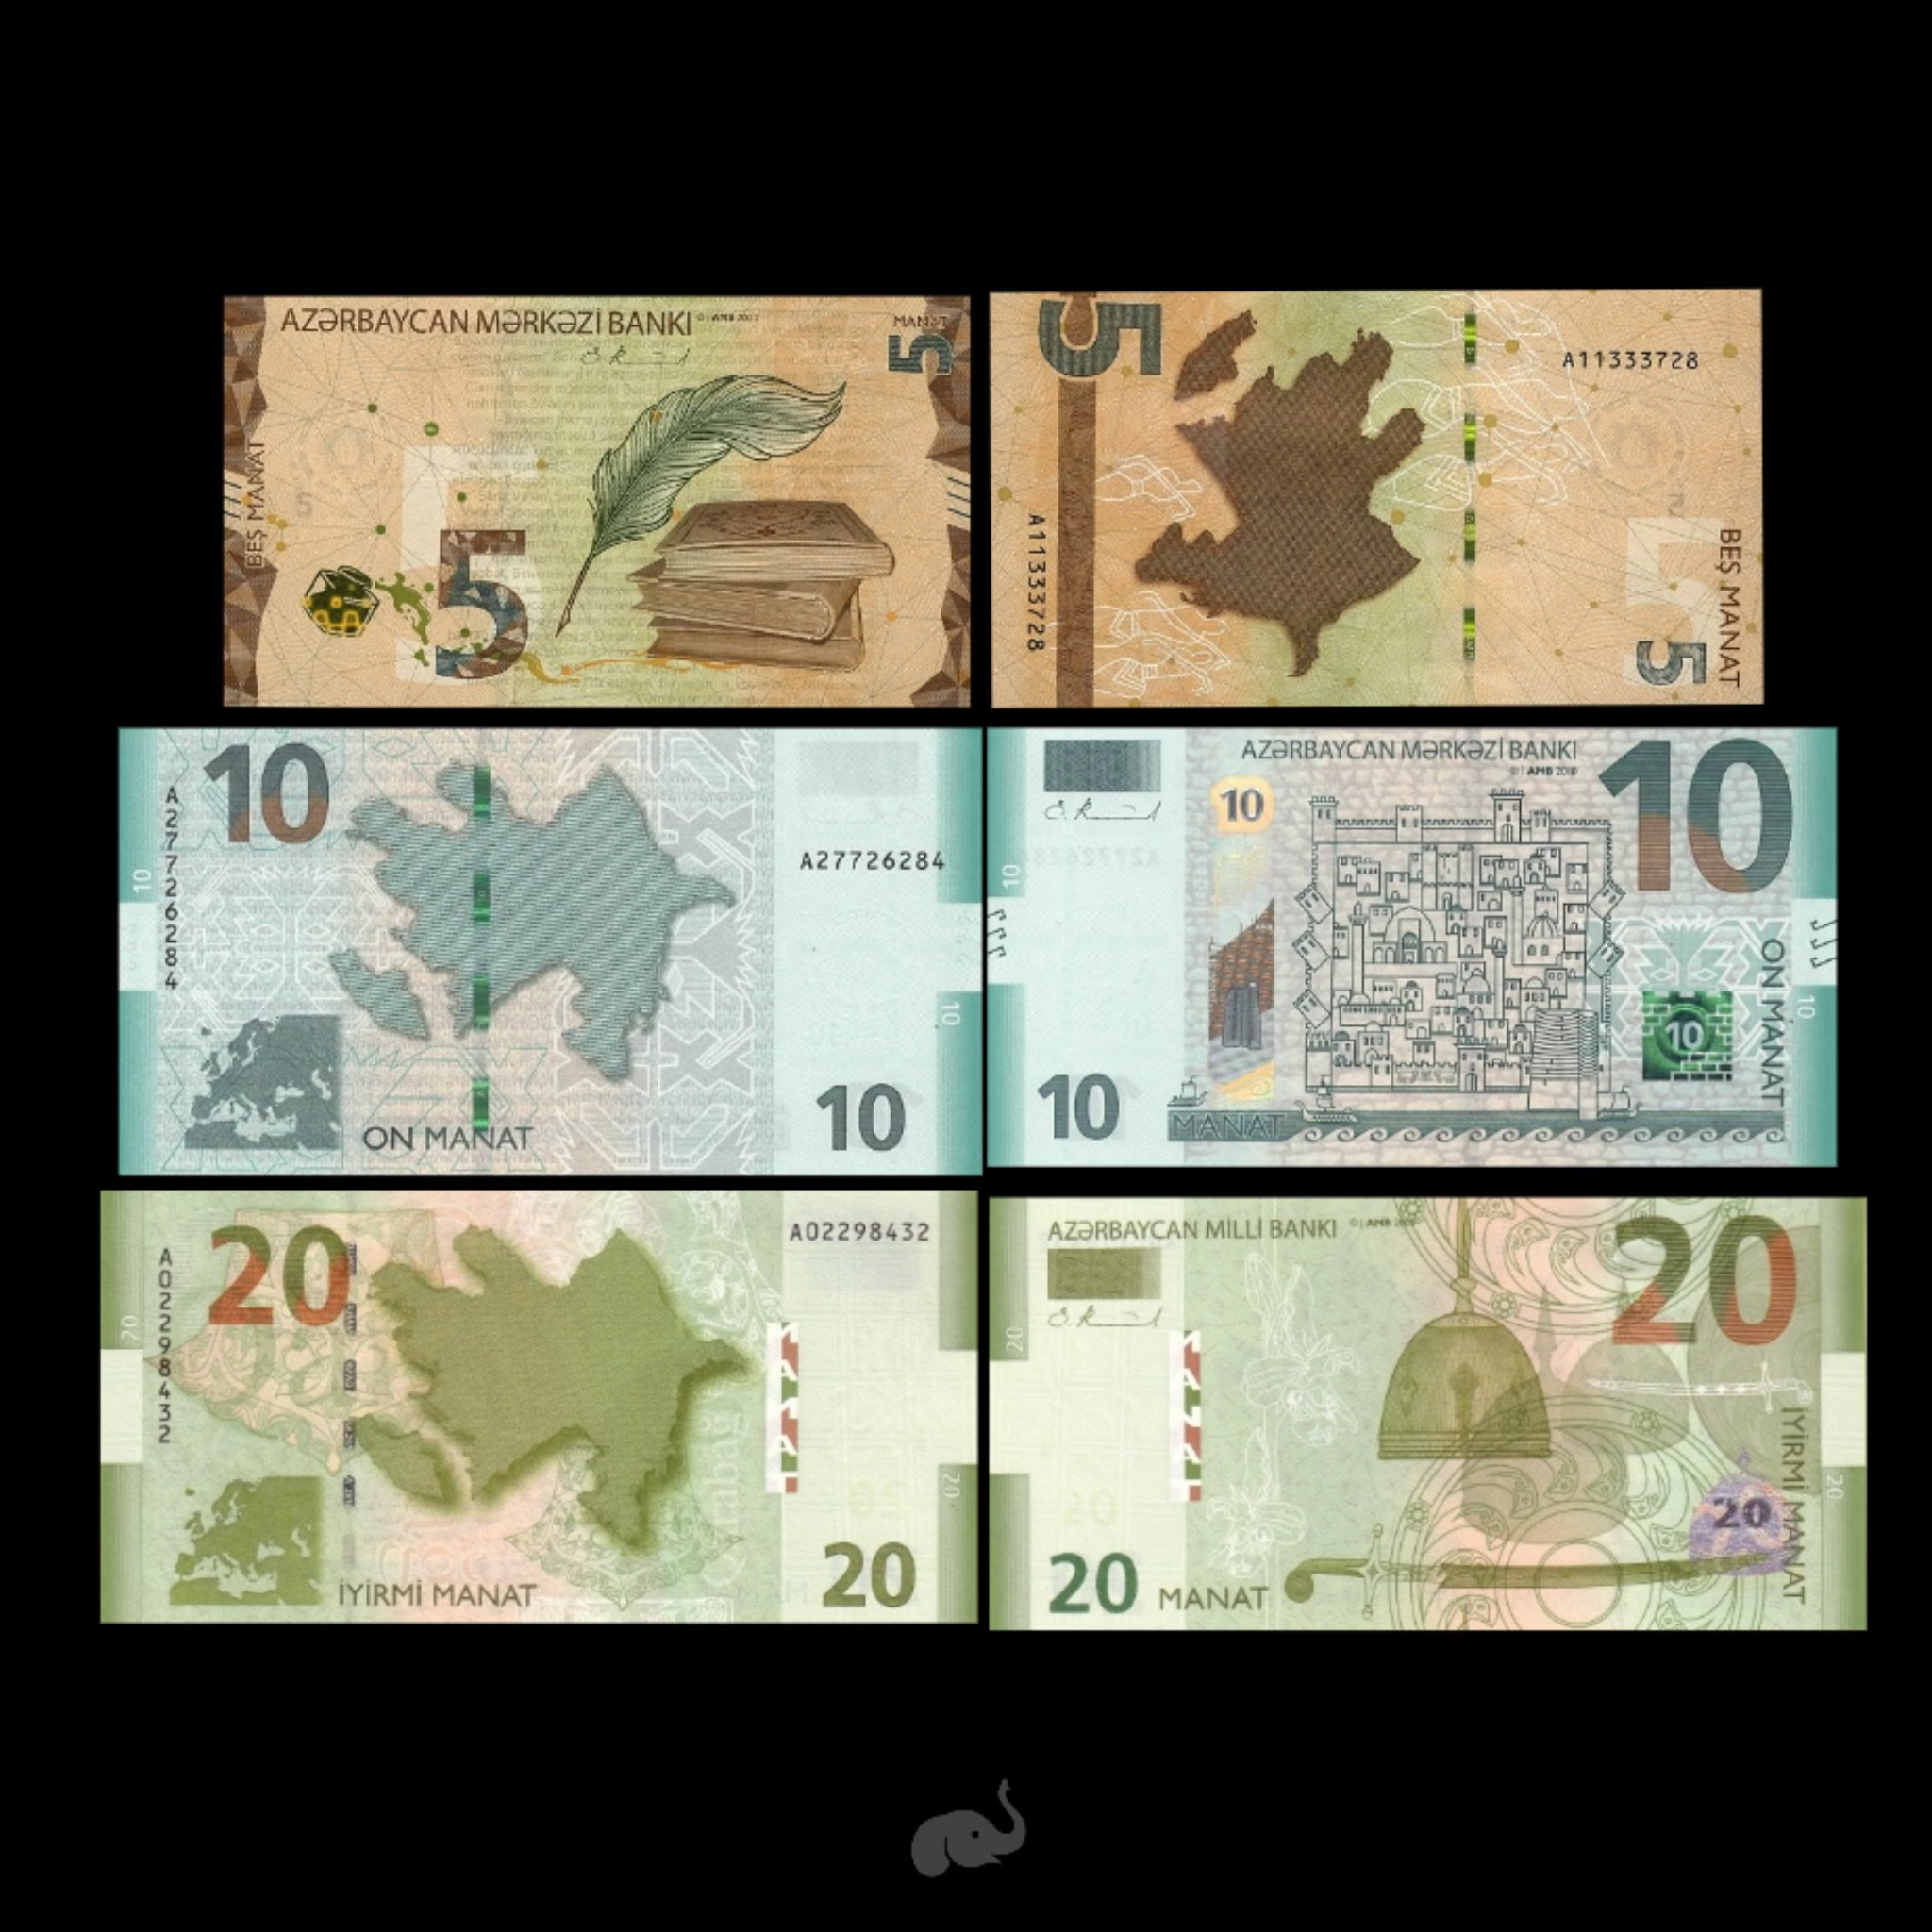 Cuba 500 Pesos 2022 P-New Unc